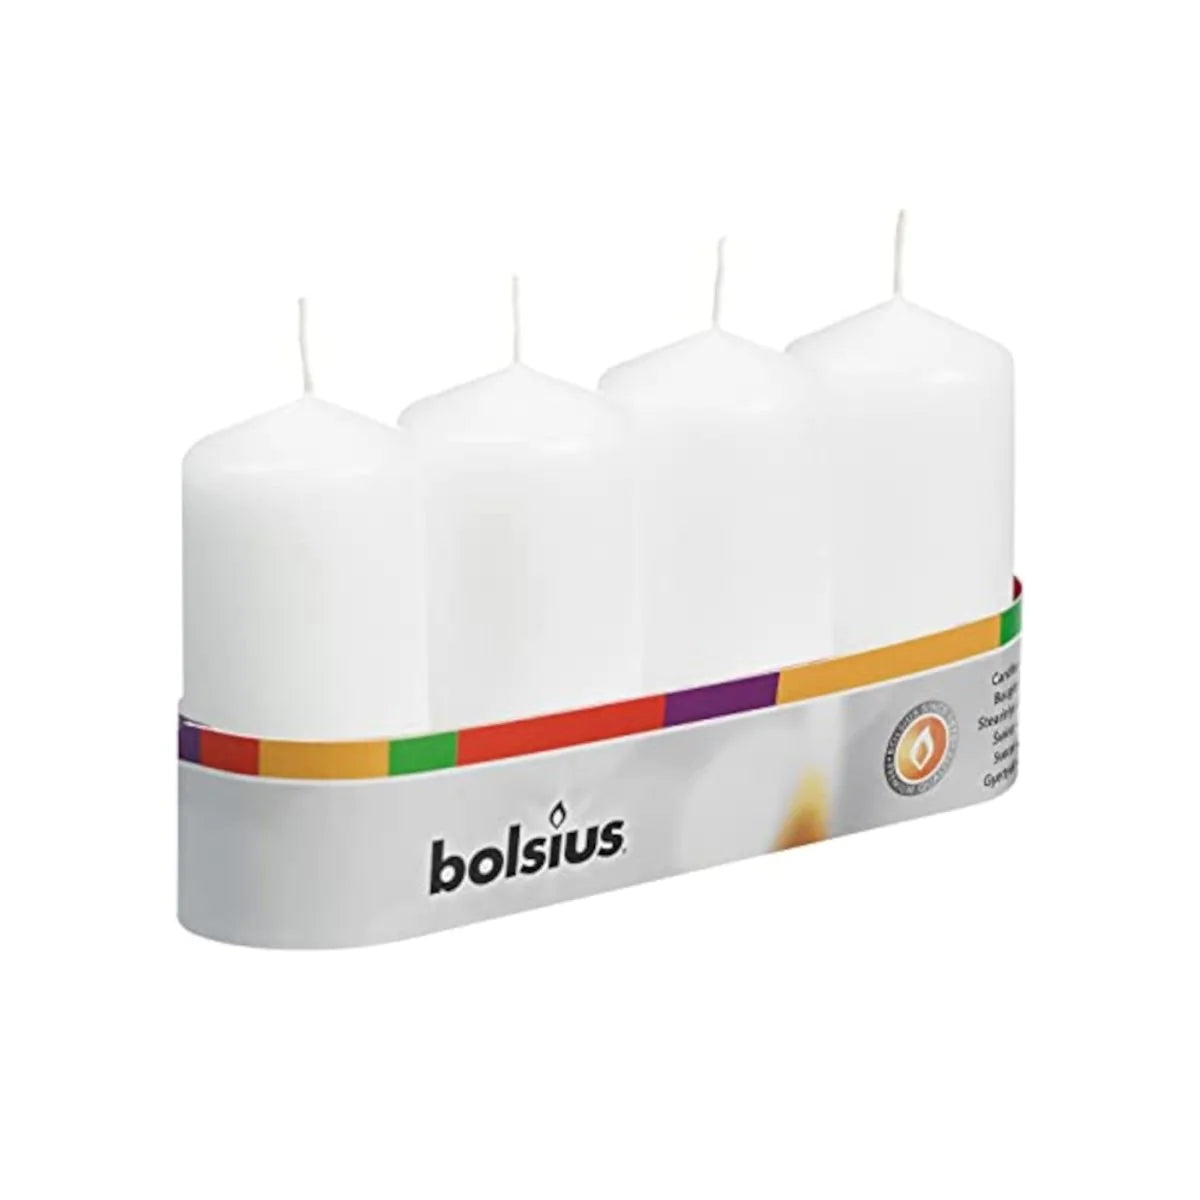 Bolsius Pillar Classic Candles 7hr